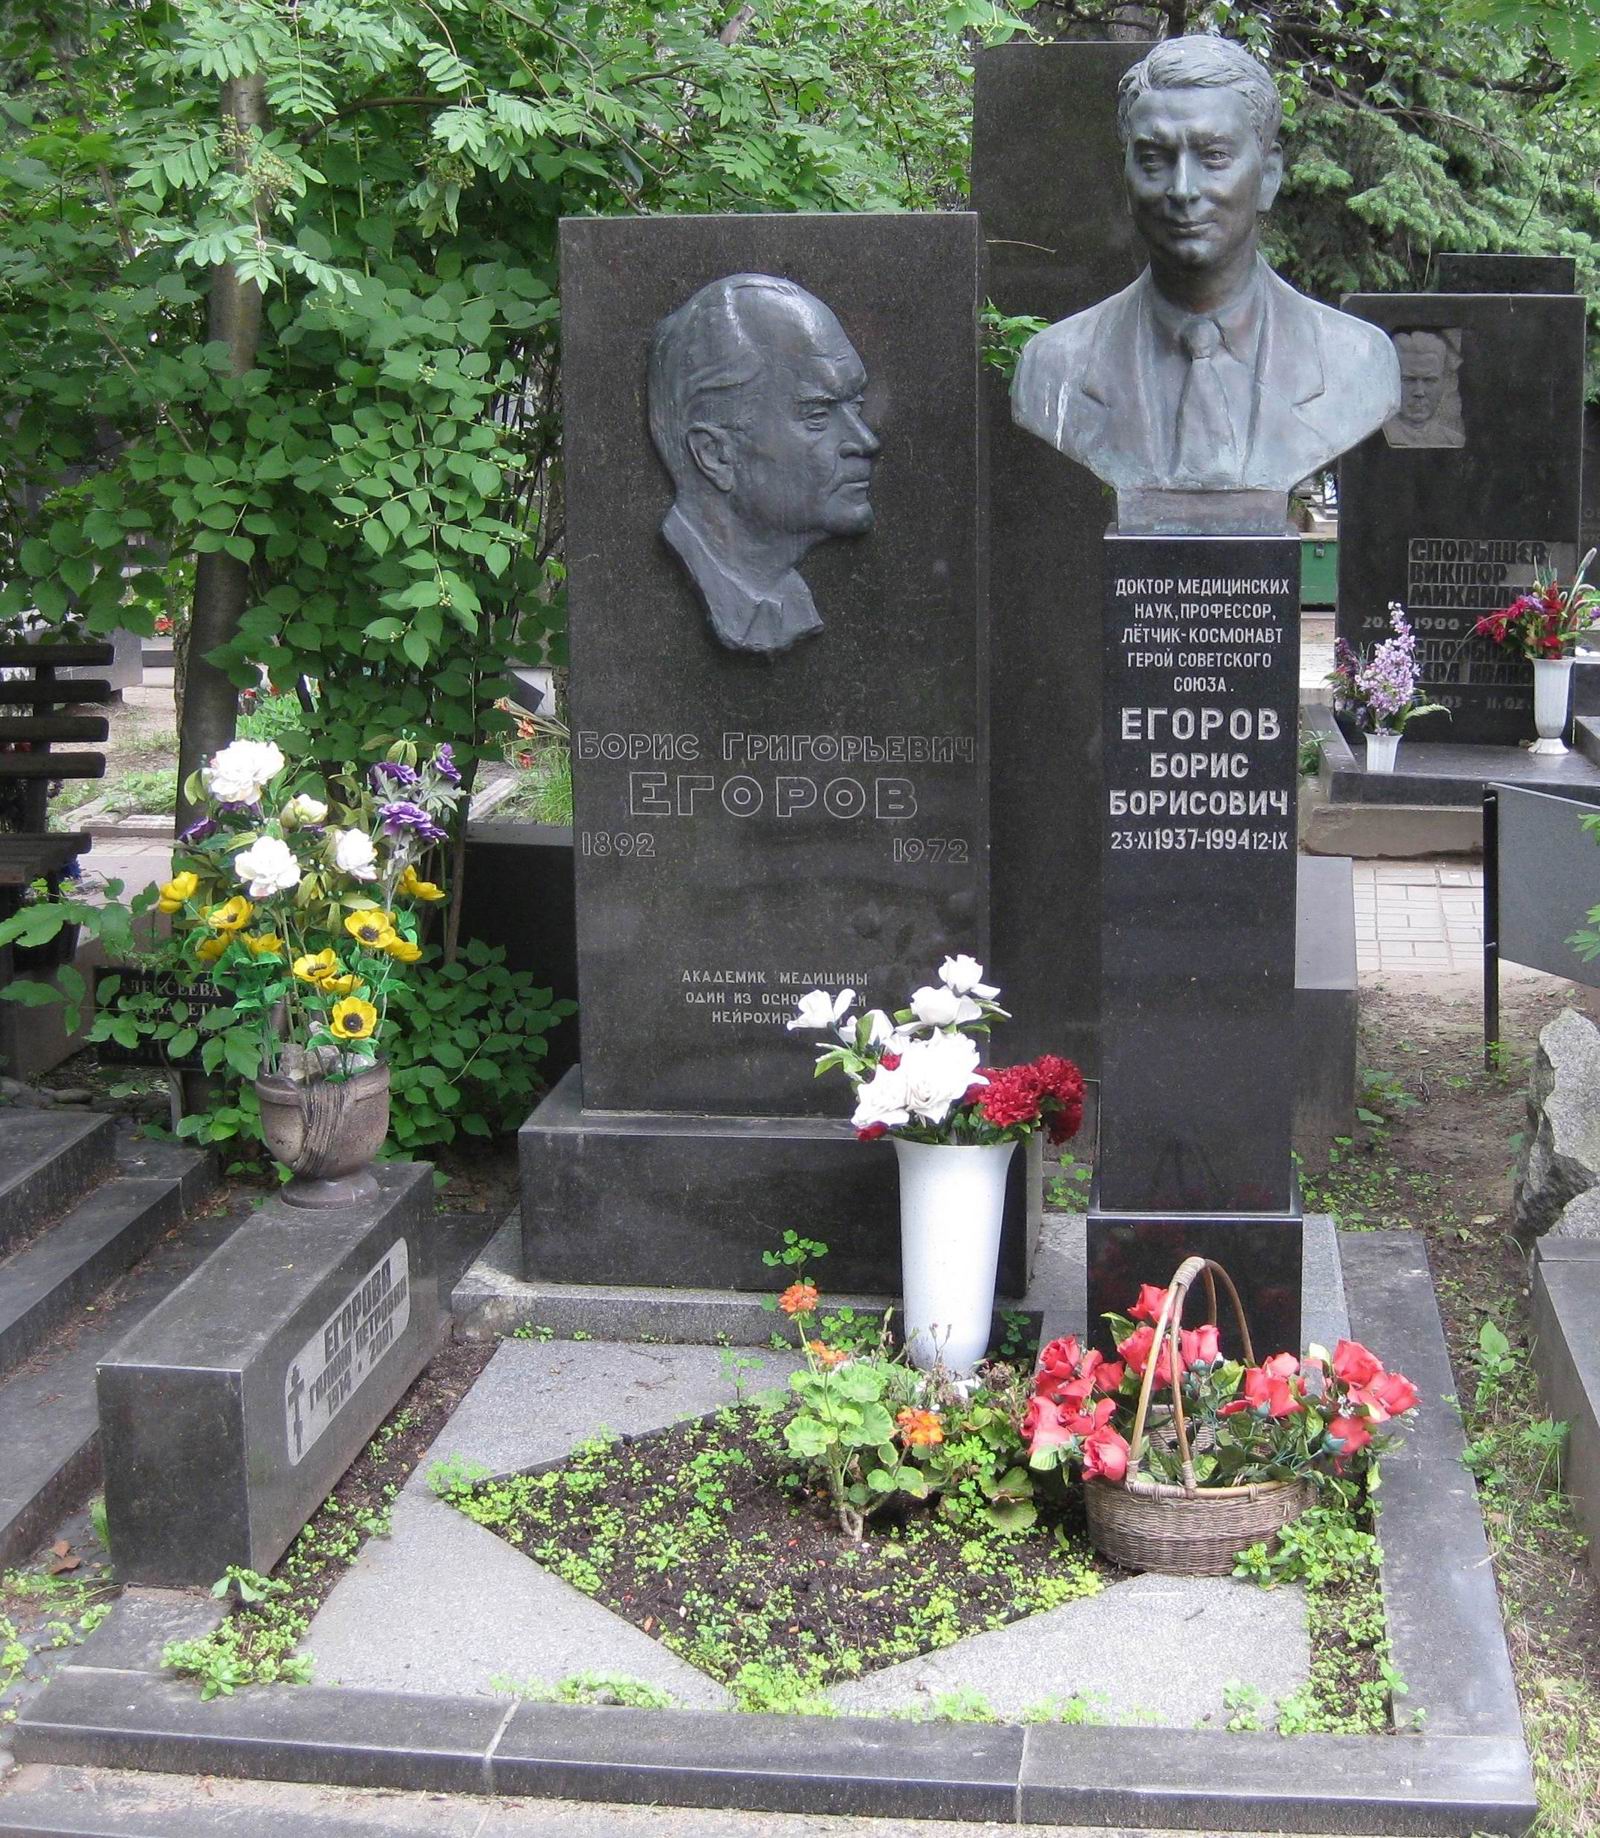 Памятник на могиле Егорова Б.Г. (1892–1972) и Егорова Б.Б. (1937–1994), ск. Ж.Канканян, на Новодевичьем кладбище (7–16–9).